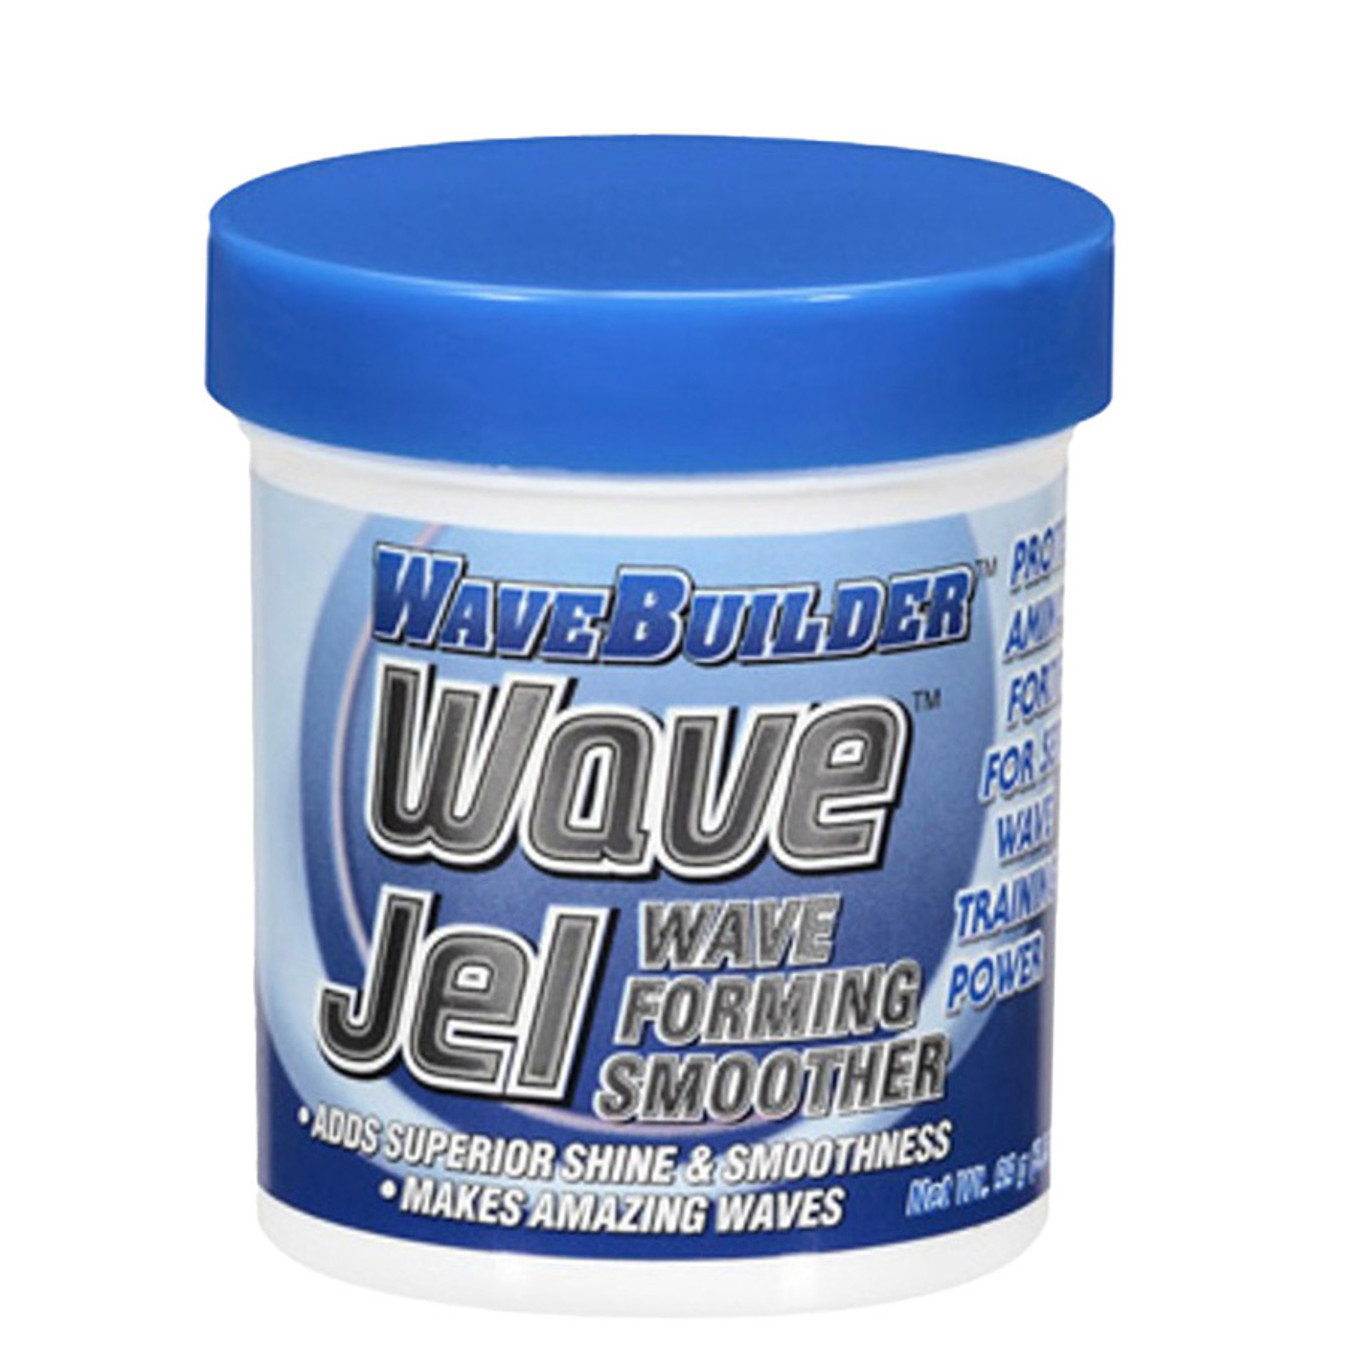 WaveBuilder Wave Jel Wave Forming Smoother (3 oz)